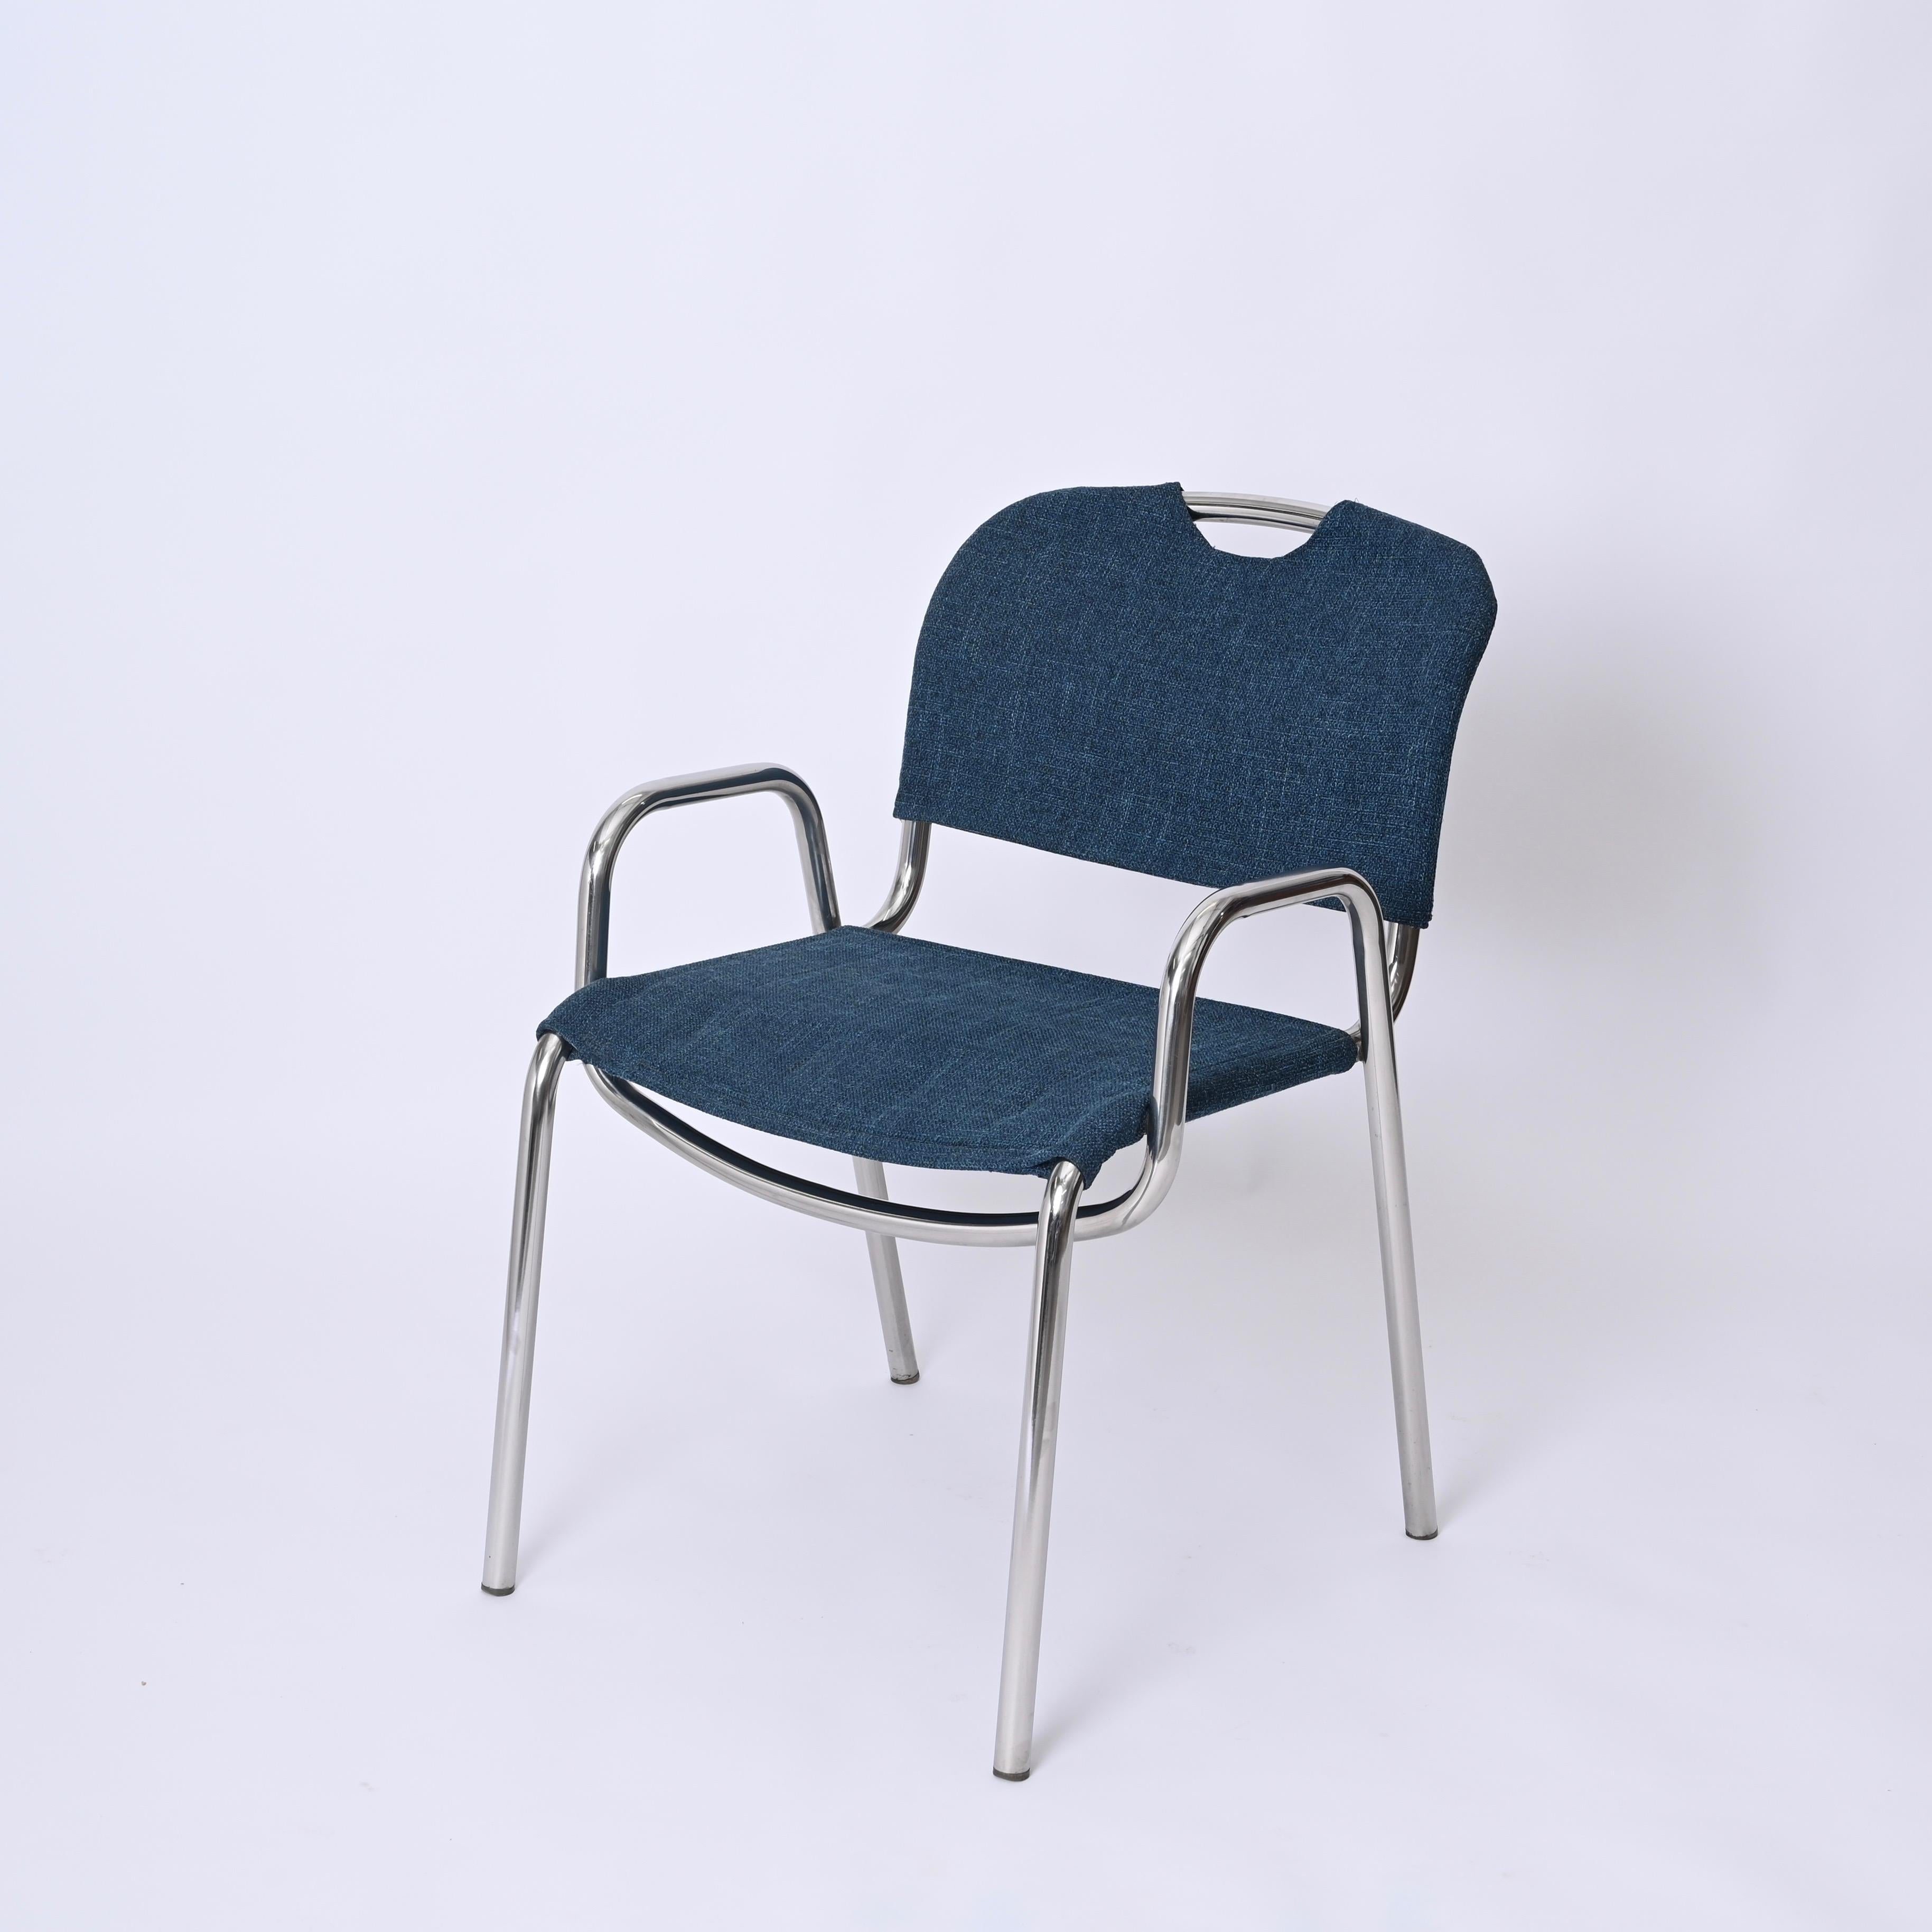 Pair of Blue Castiglietta Dining Chairs by Castiglioni for Zanotta, Italy 1960s For Sale 7